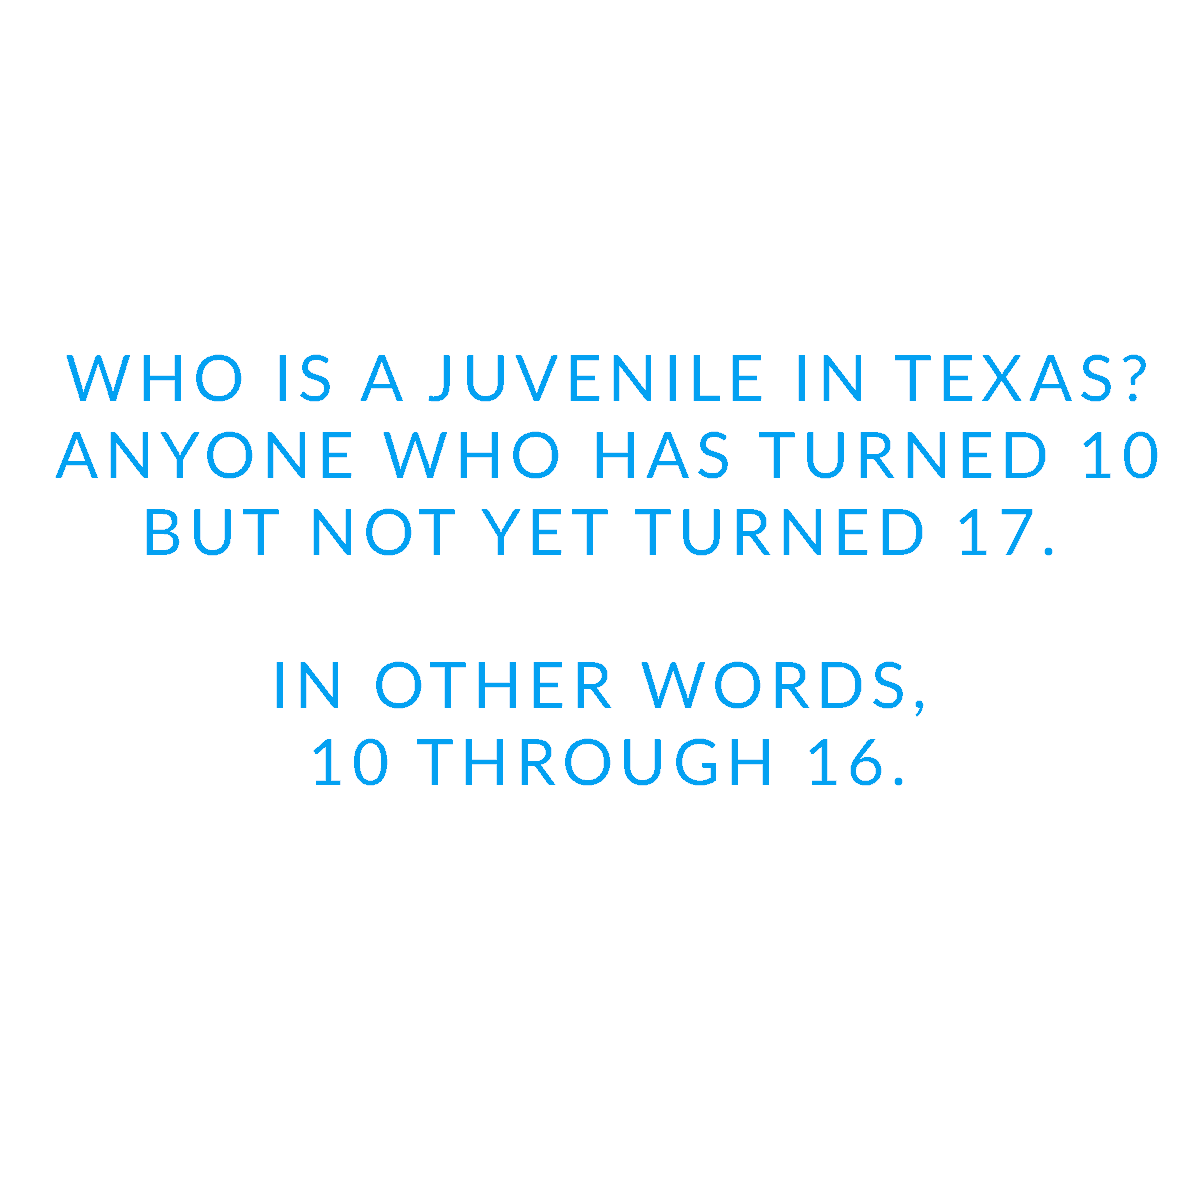 Juvenile-in-Texas